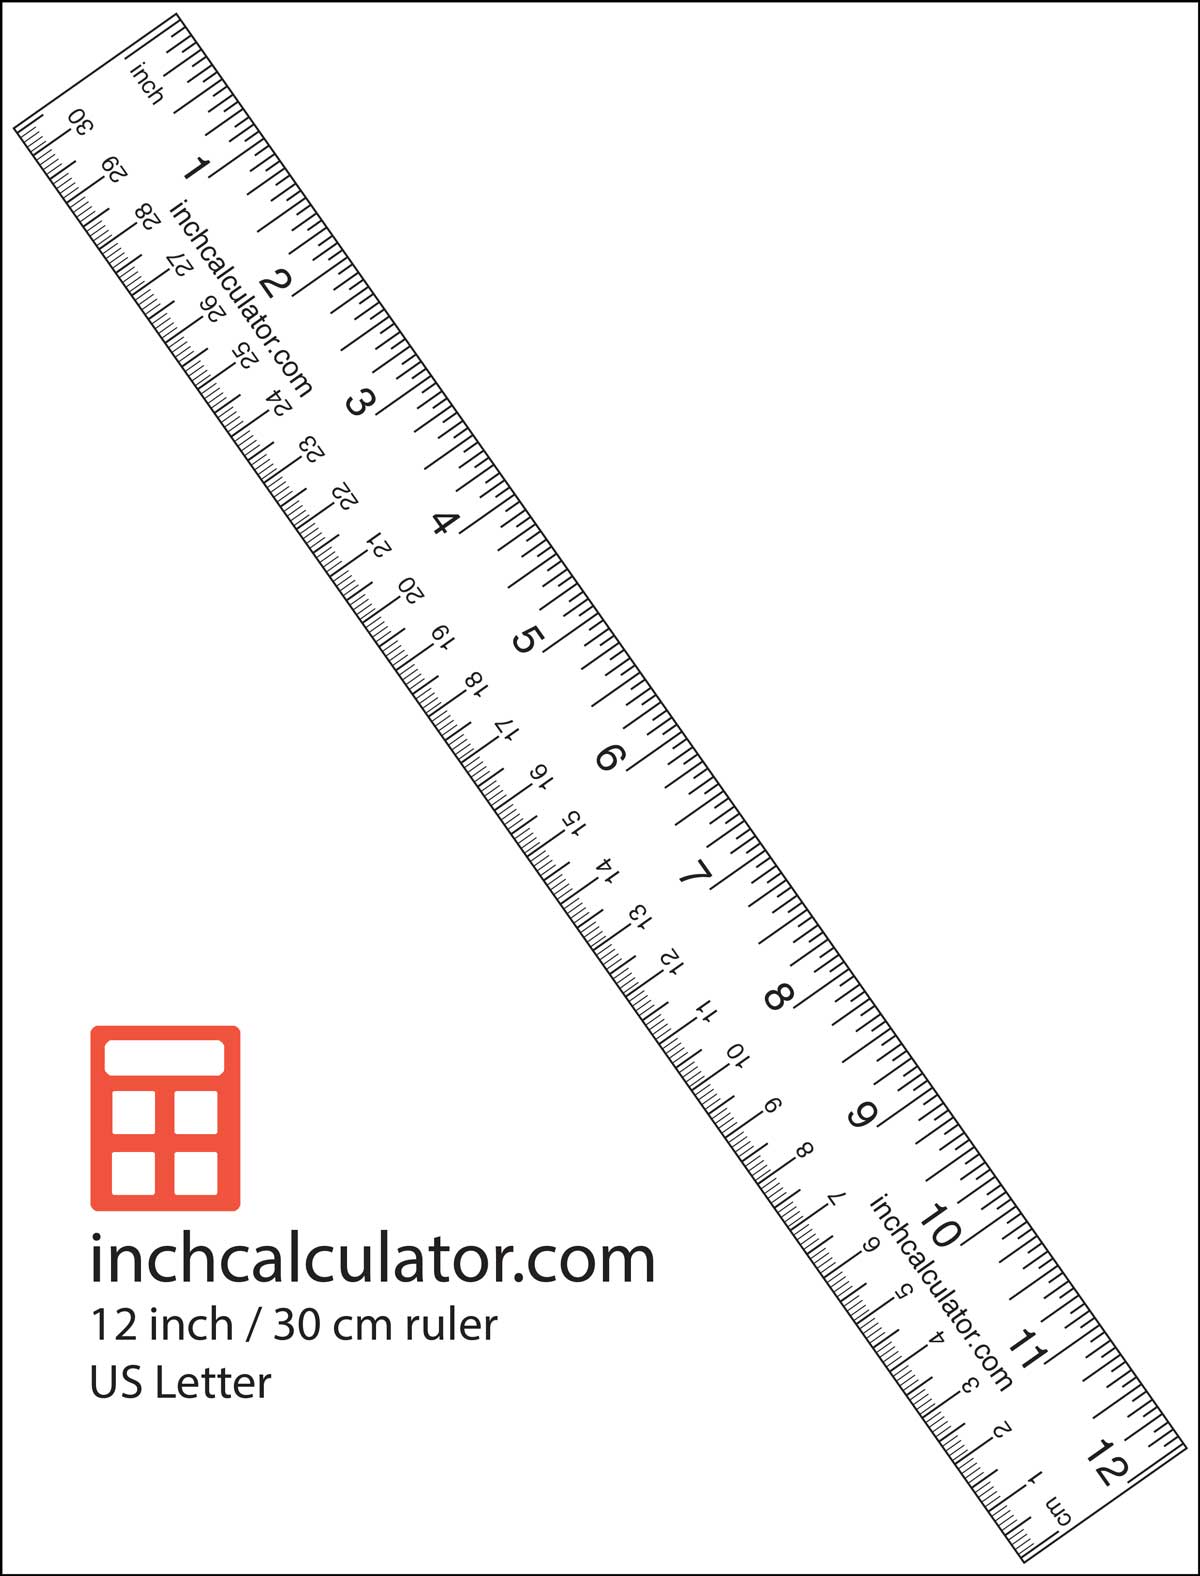 Imprimir um papel com uma régua para fazer as medições quando você não tiver uma fita métrica ou régua't have a tape measure or ruler